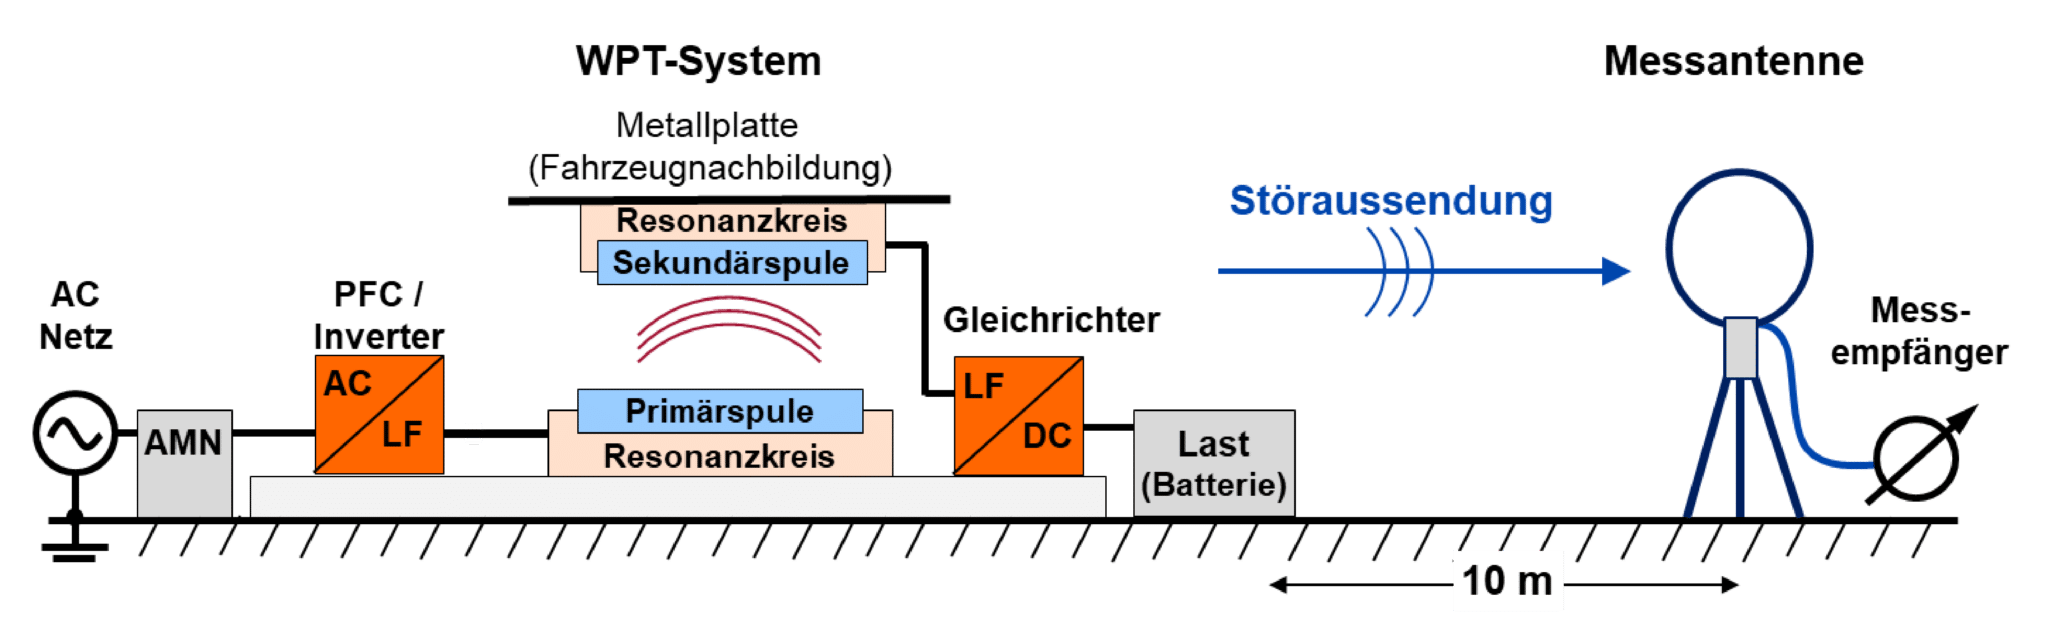 Veranschaulichung eines induktiven Ladesystems - Wireless Charging